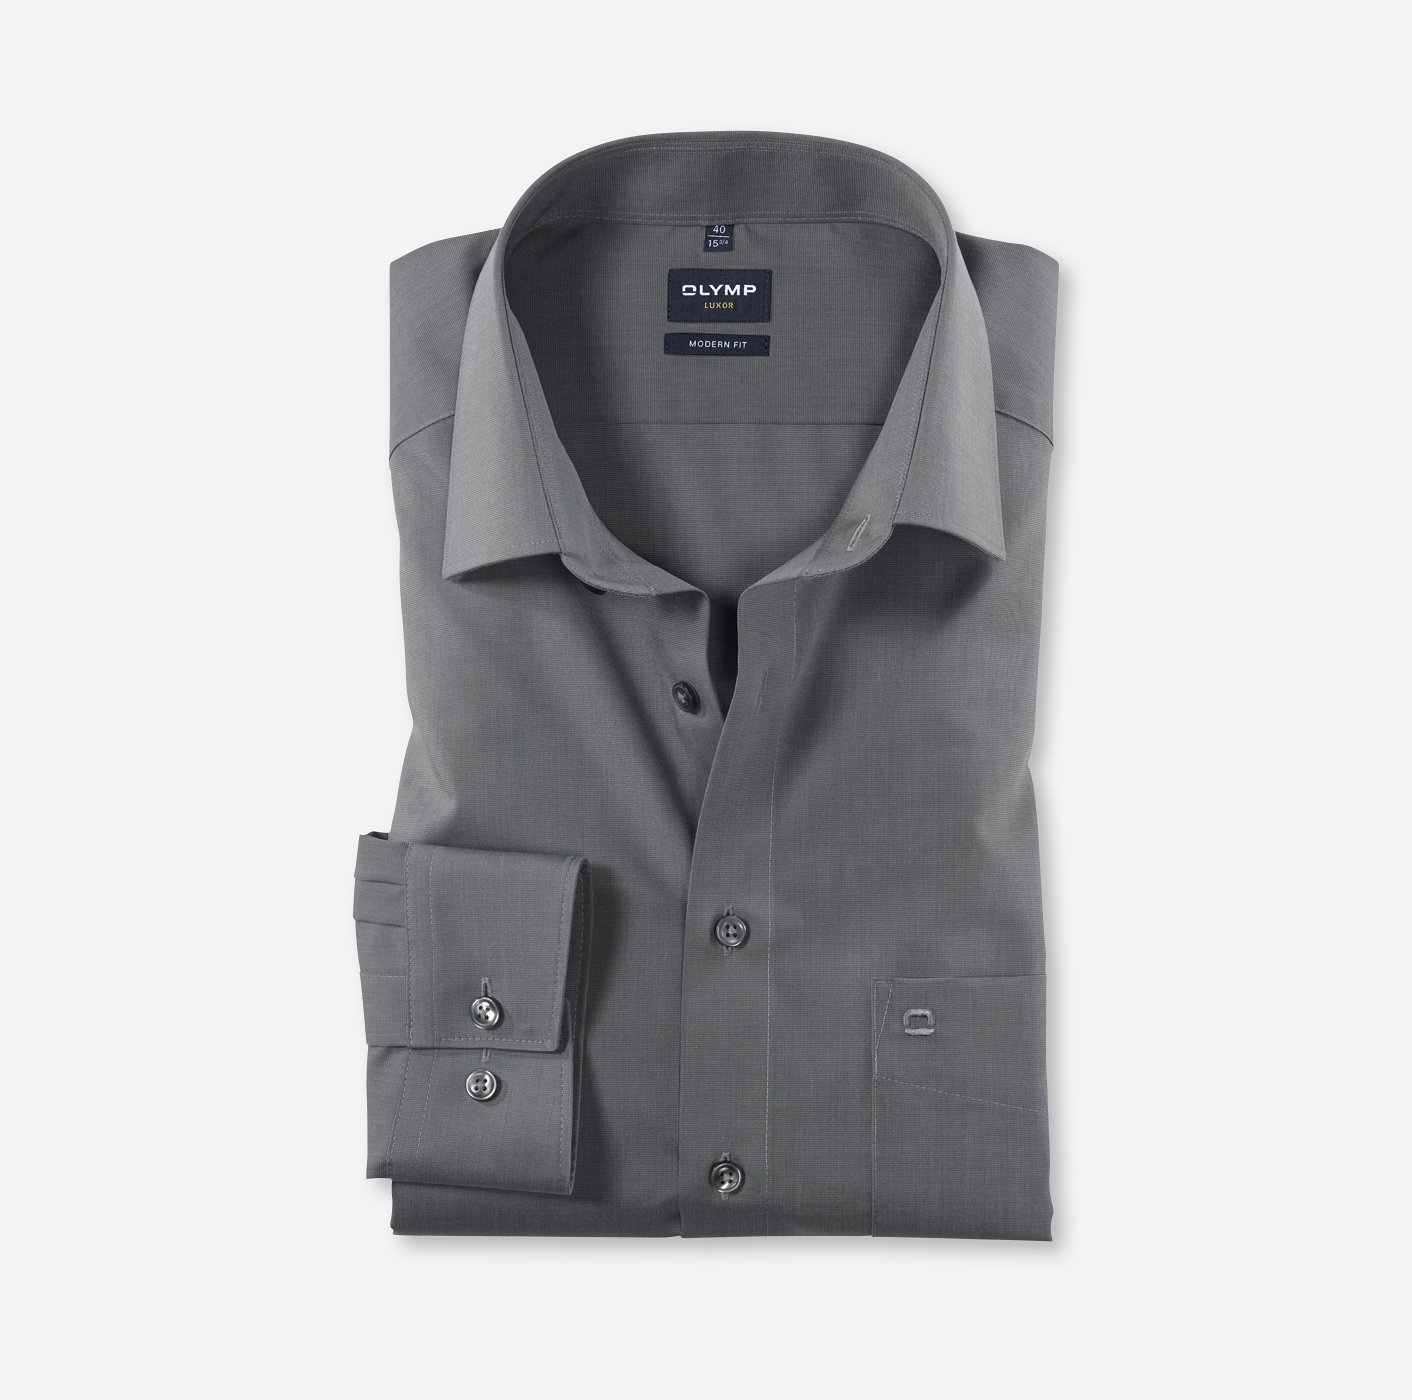 OLYMP Luxor, modern fit, Business shirt, New Kent, Gris Souris